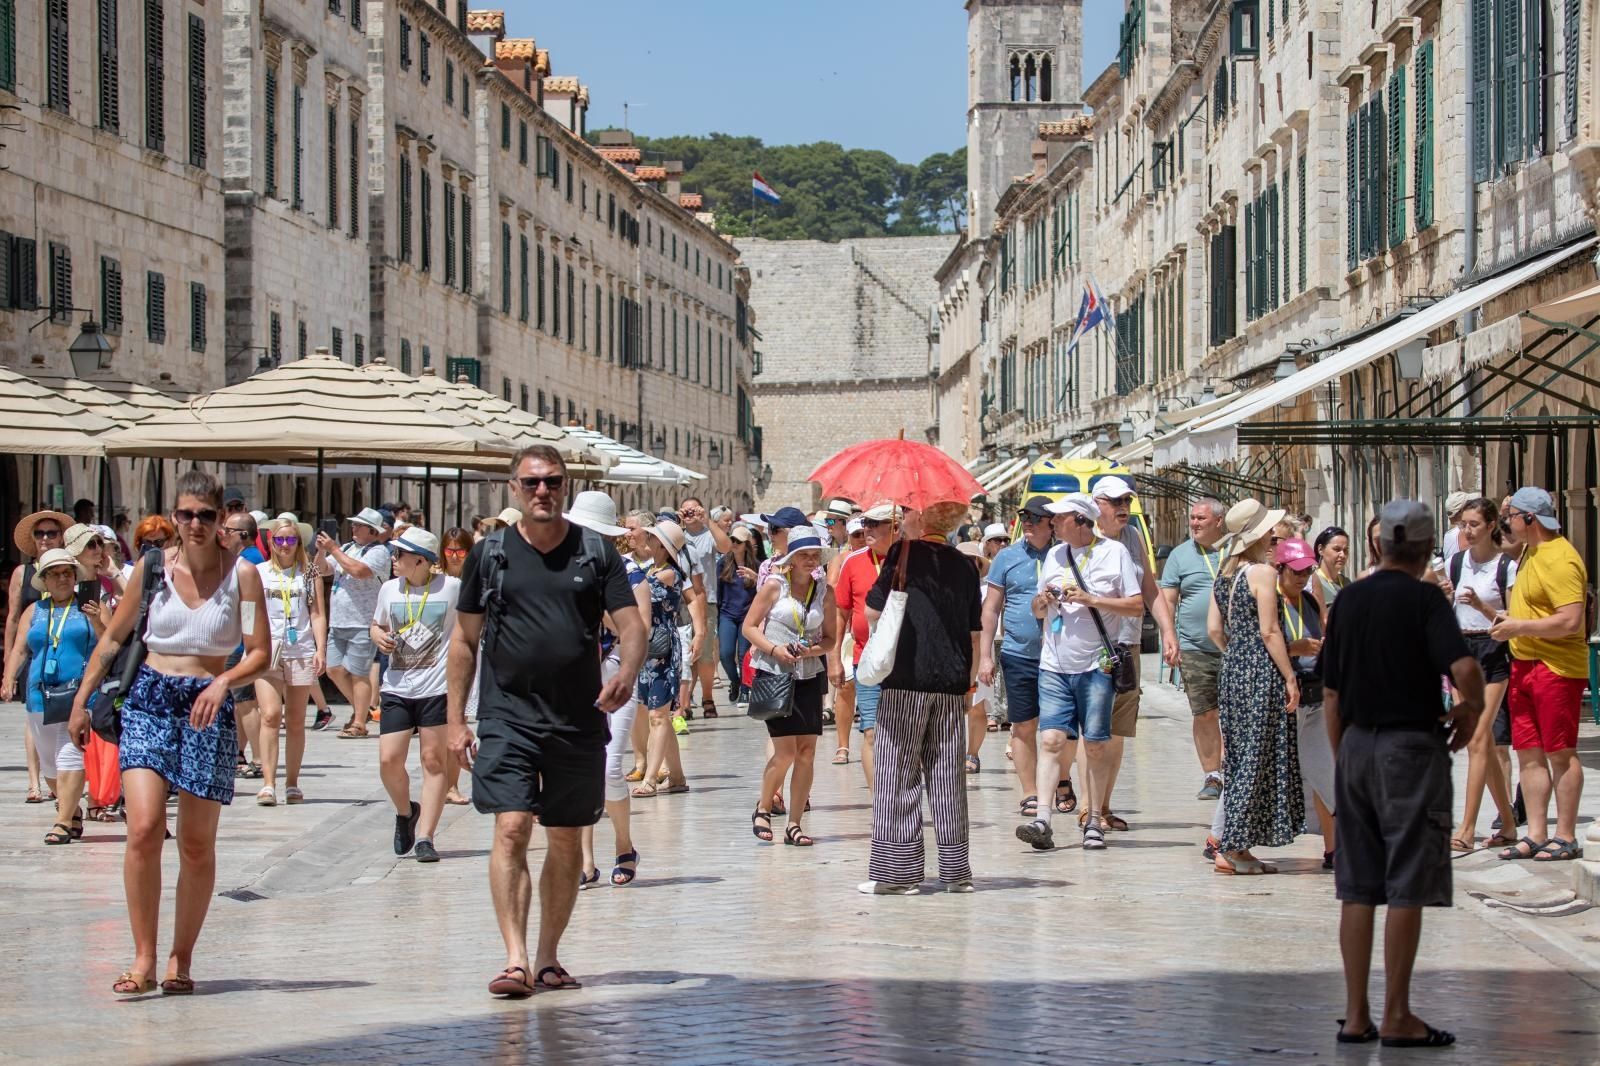 30.06.2021., Stara gradska jezgra, Dubrovnik - Iznimno vruc i "tezak" dan. Svak se snalazi, netko bijegom u hlad, netko kupanjem, a netko kratkotrajnim osvjezenjem na fontani.
Photo: Grgo Jelavic/PIXSELL